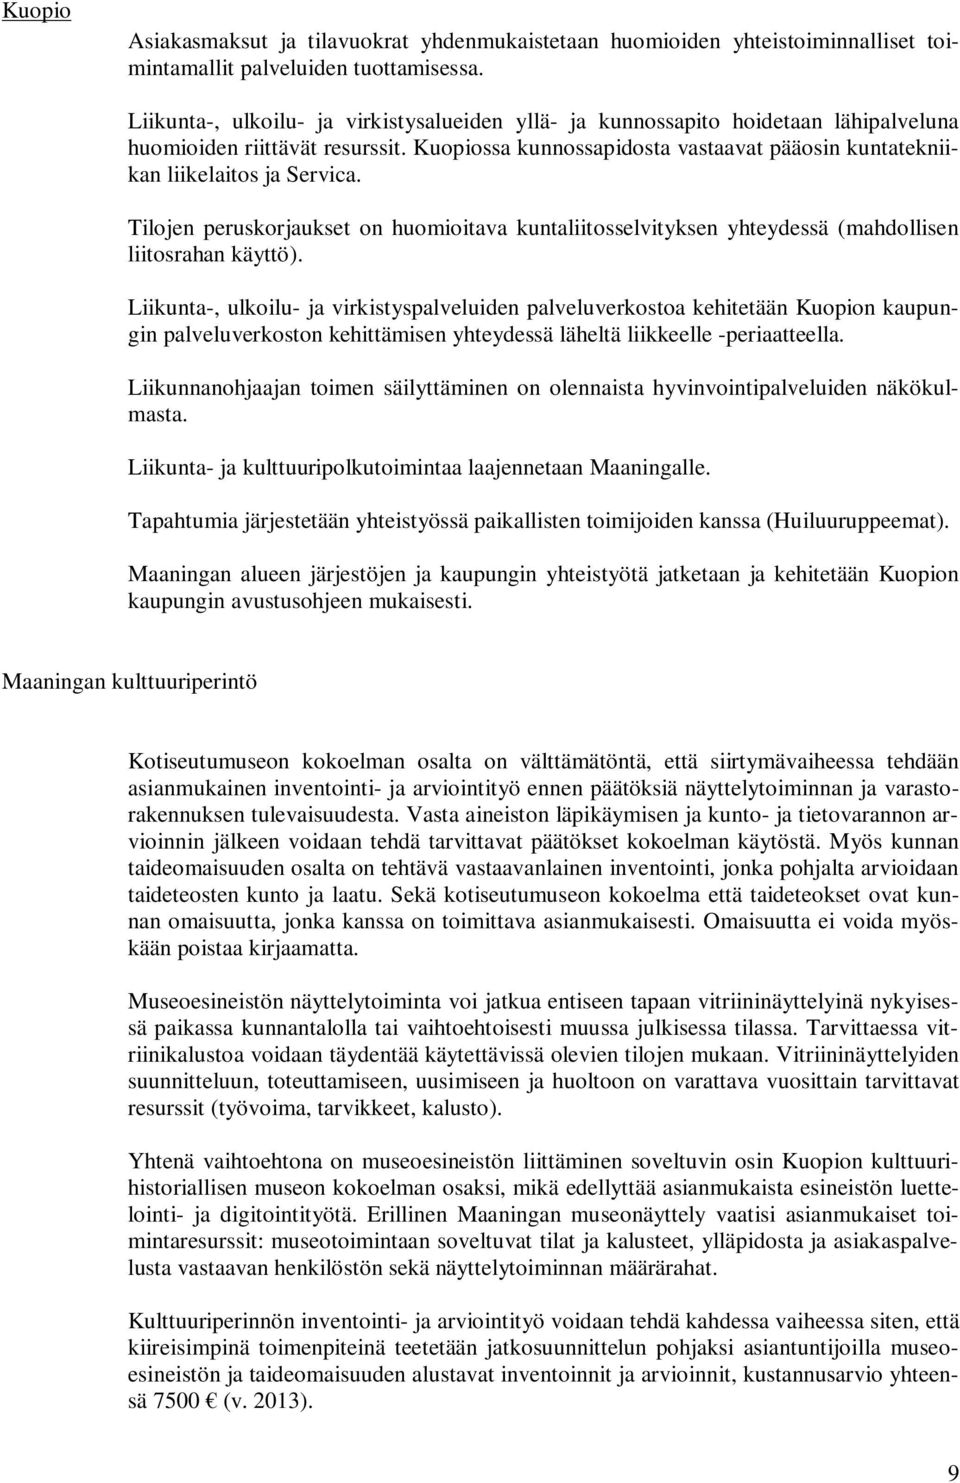 Kuopiossa kunnossapidosta vastaavat pääosin kuntatekniikan liikelaitos ja Servica. Tilojen peruskorjaukset on huomioitava kuntaliitosselvityksen yhteydessä (mahdollisen liitosrahan käyttö).